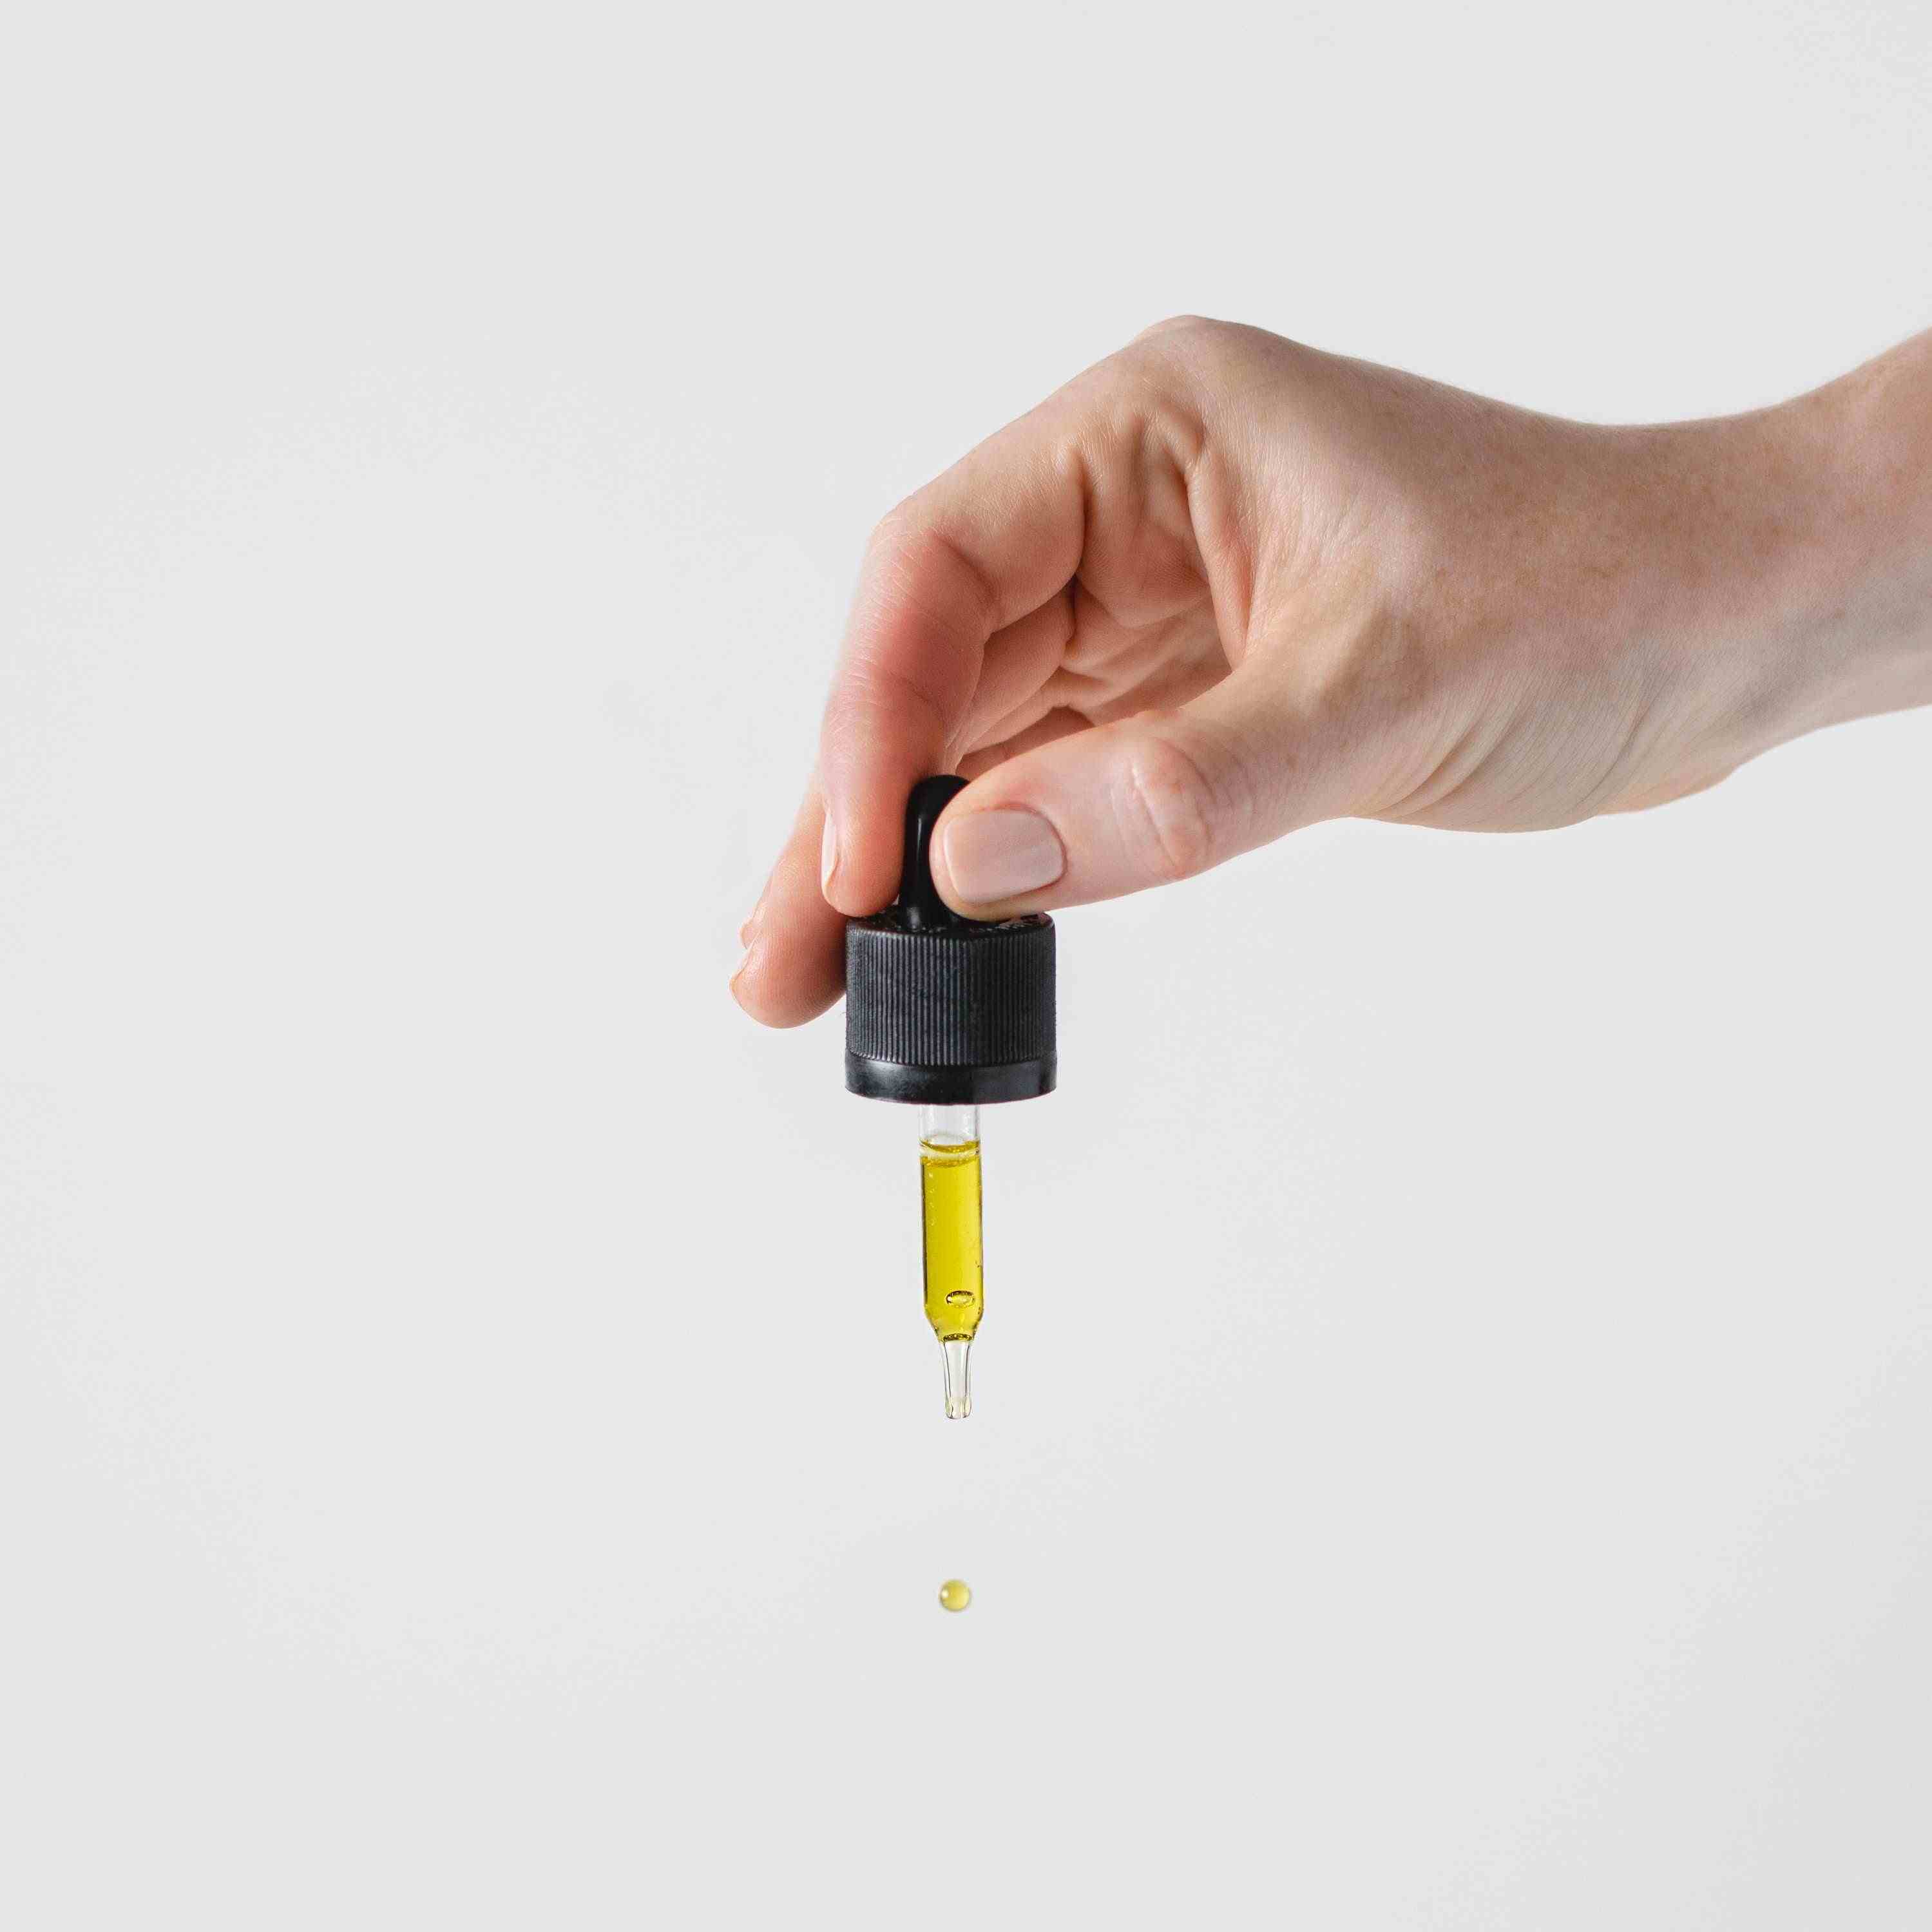 De la electricidad al aceite de oliva: los 5 productos que más suben y bajan en un año